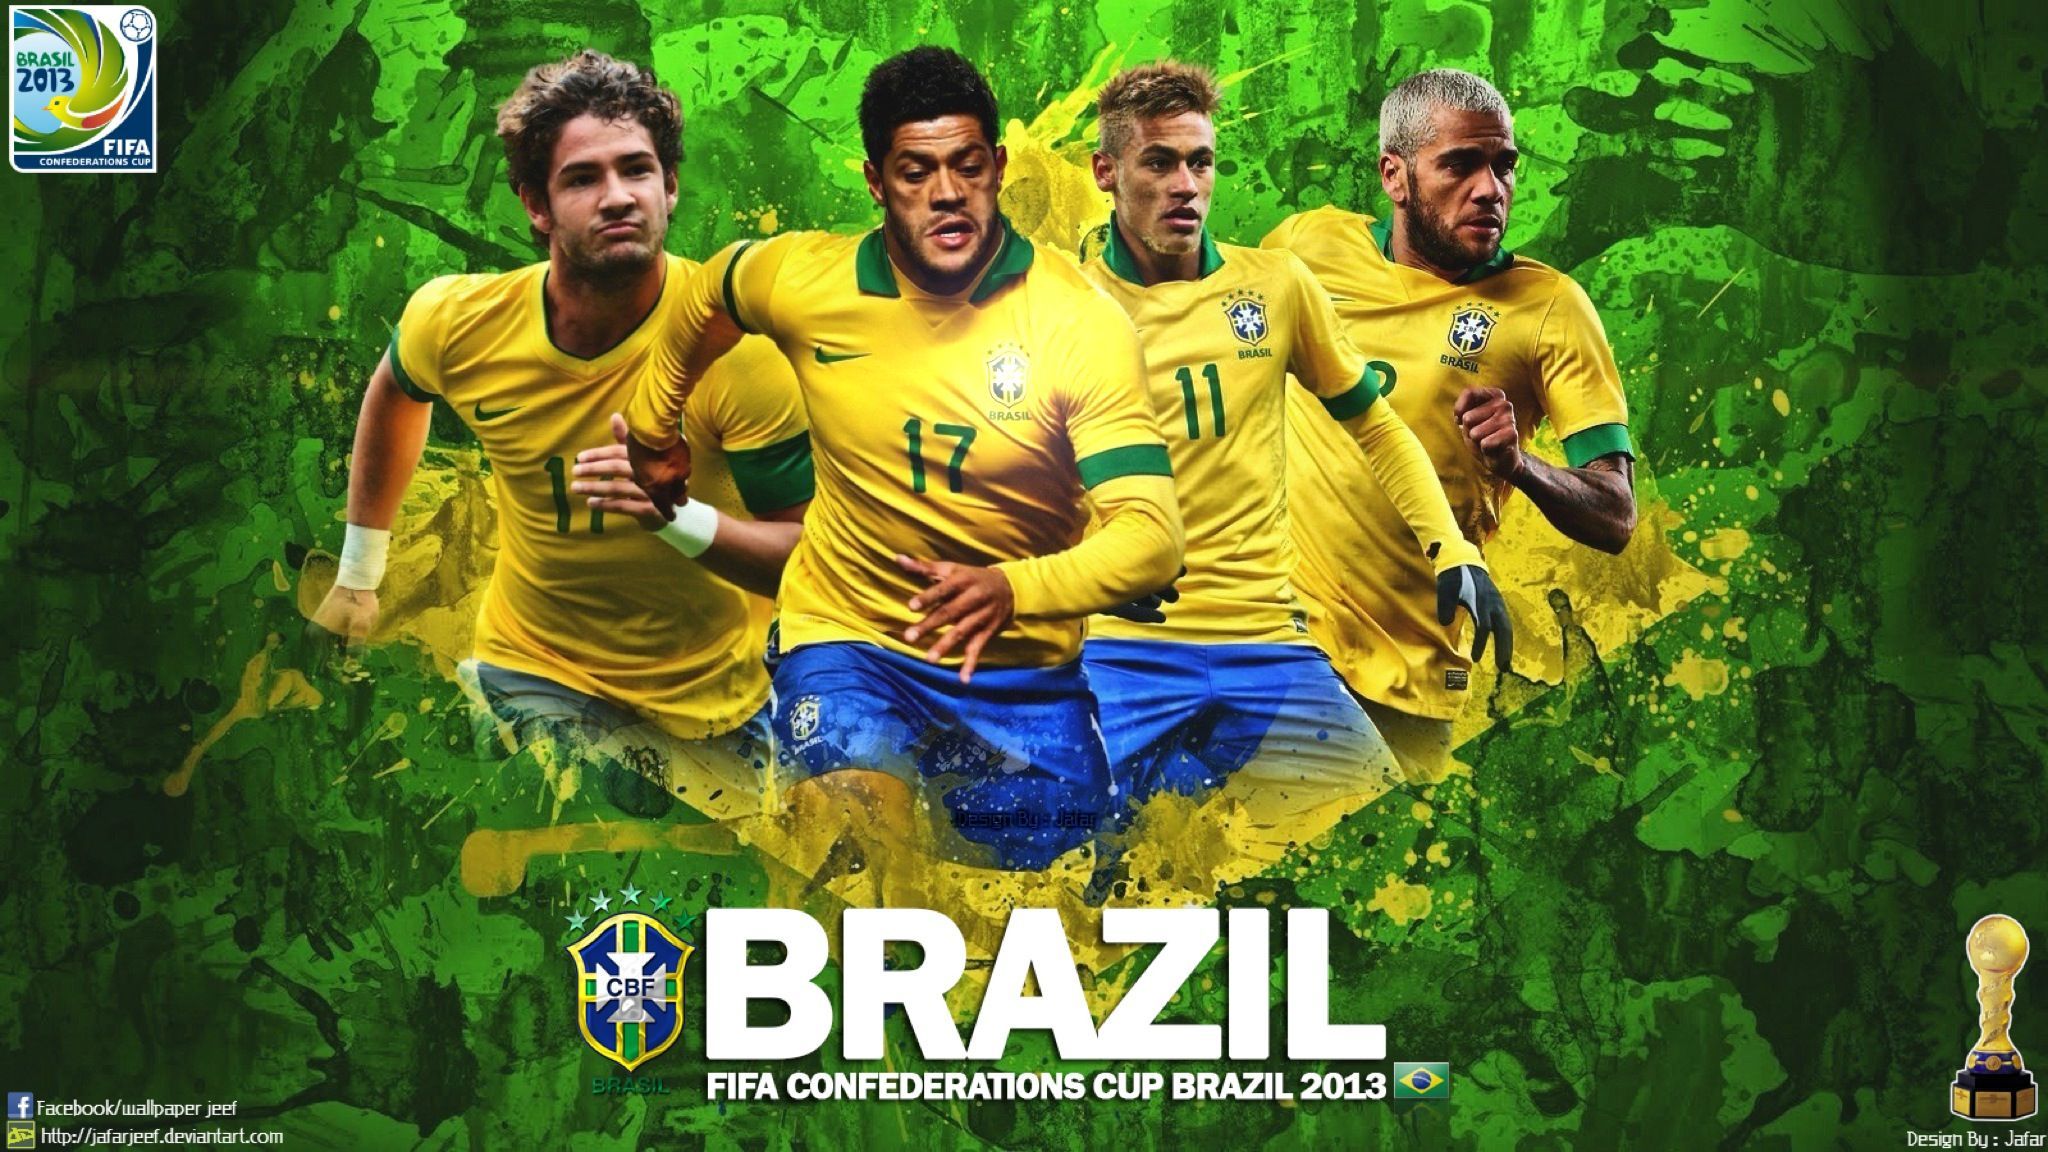 Brazil Soccer Team Wallpaper Free Brazil Soccer Team Background